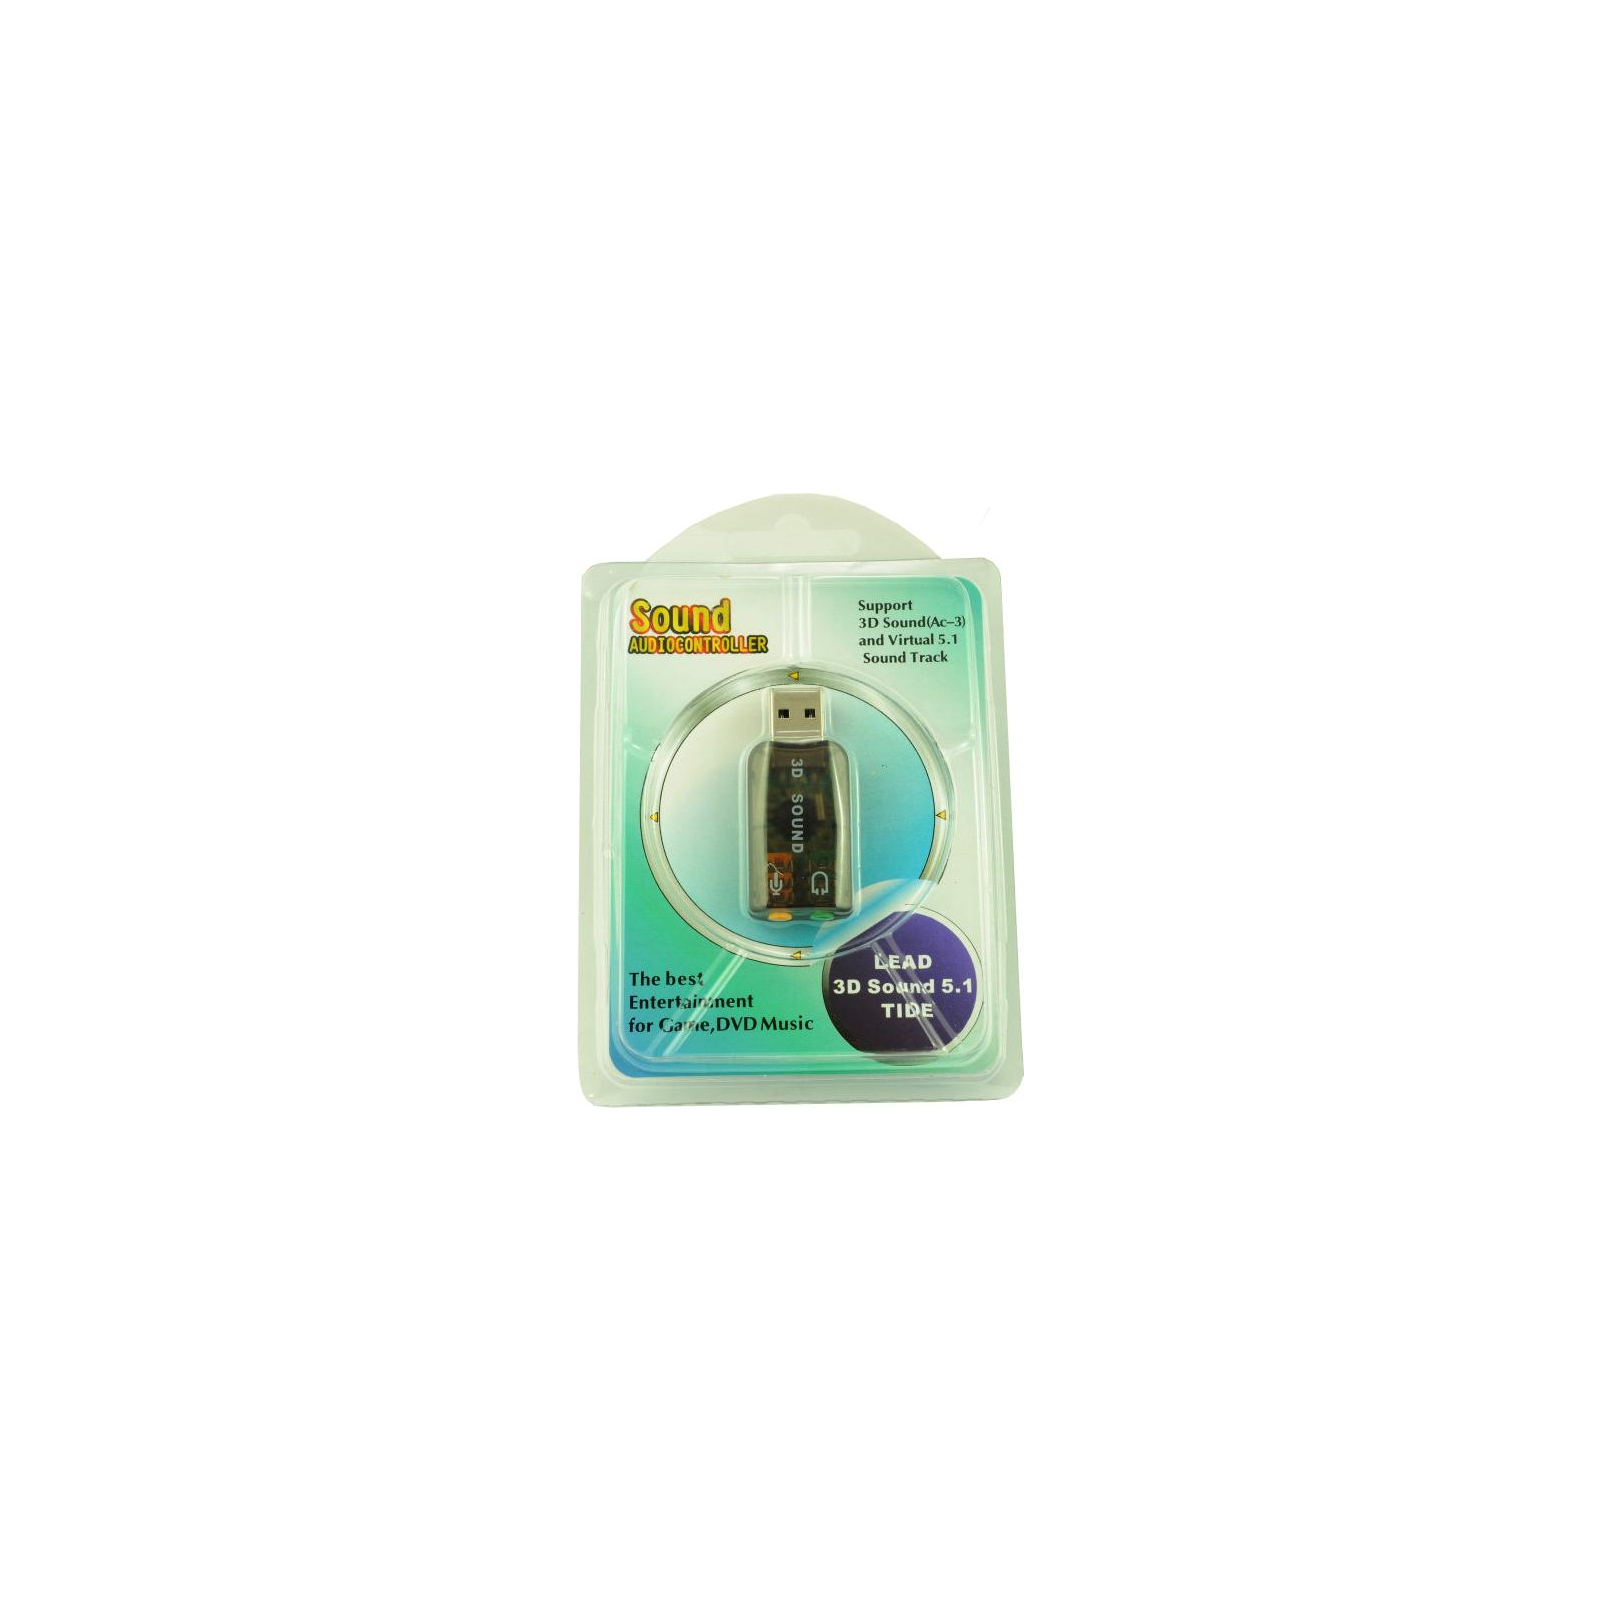 Звуковая плата Atcom USB-sound card (5.1) 3D sound (Windows 7 ready) (7807) изображение 5